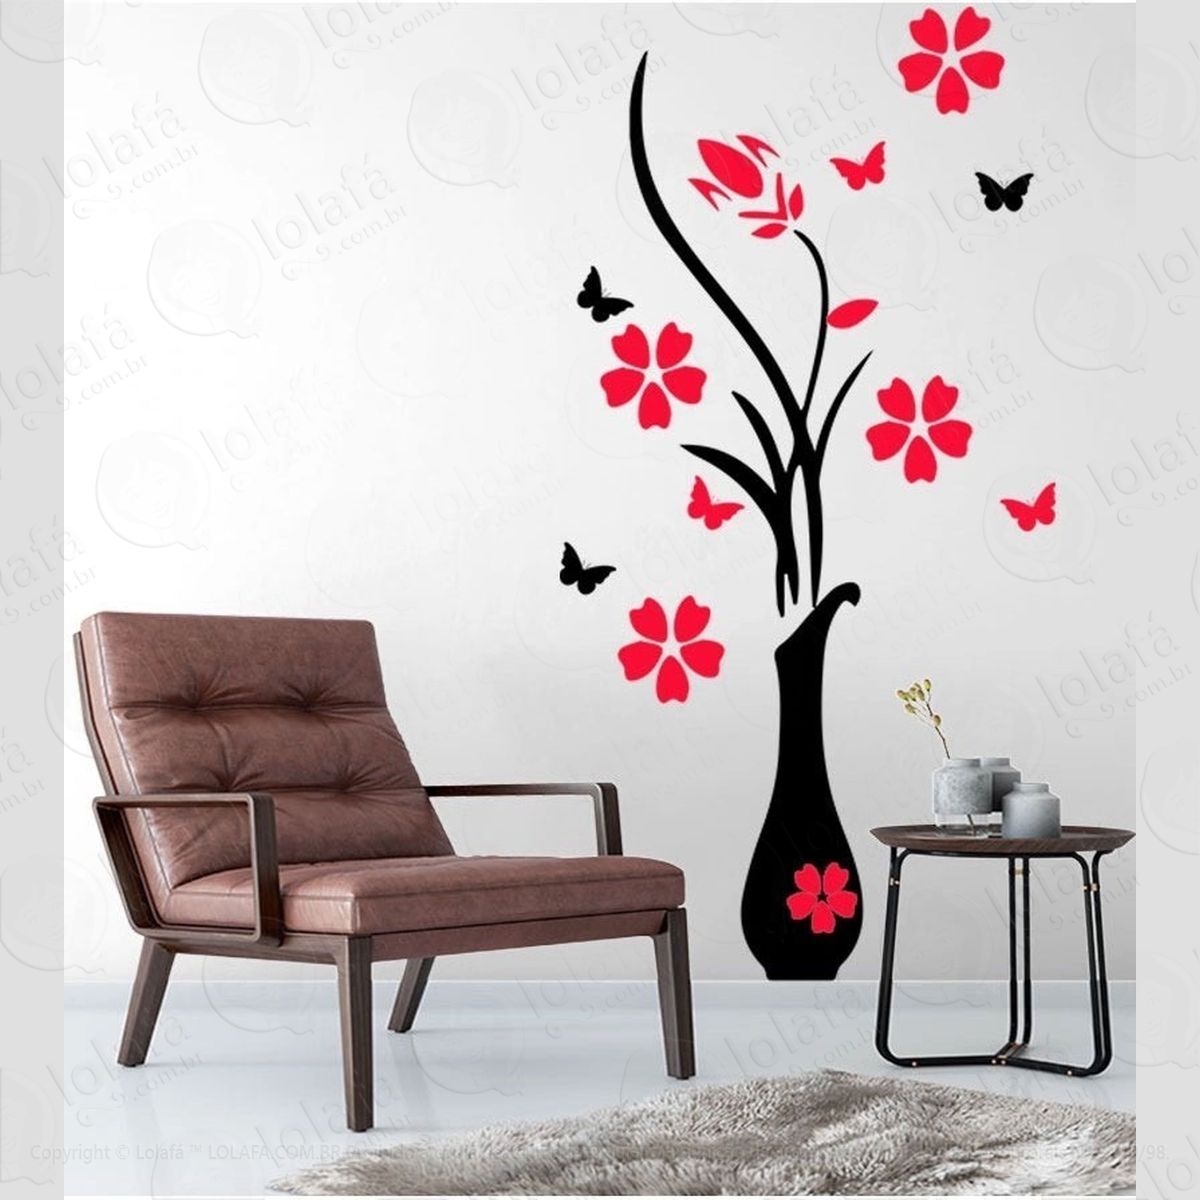 adesivo de parede decorativo flores vermelhas borboletas mod:1024